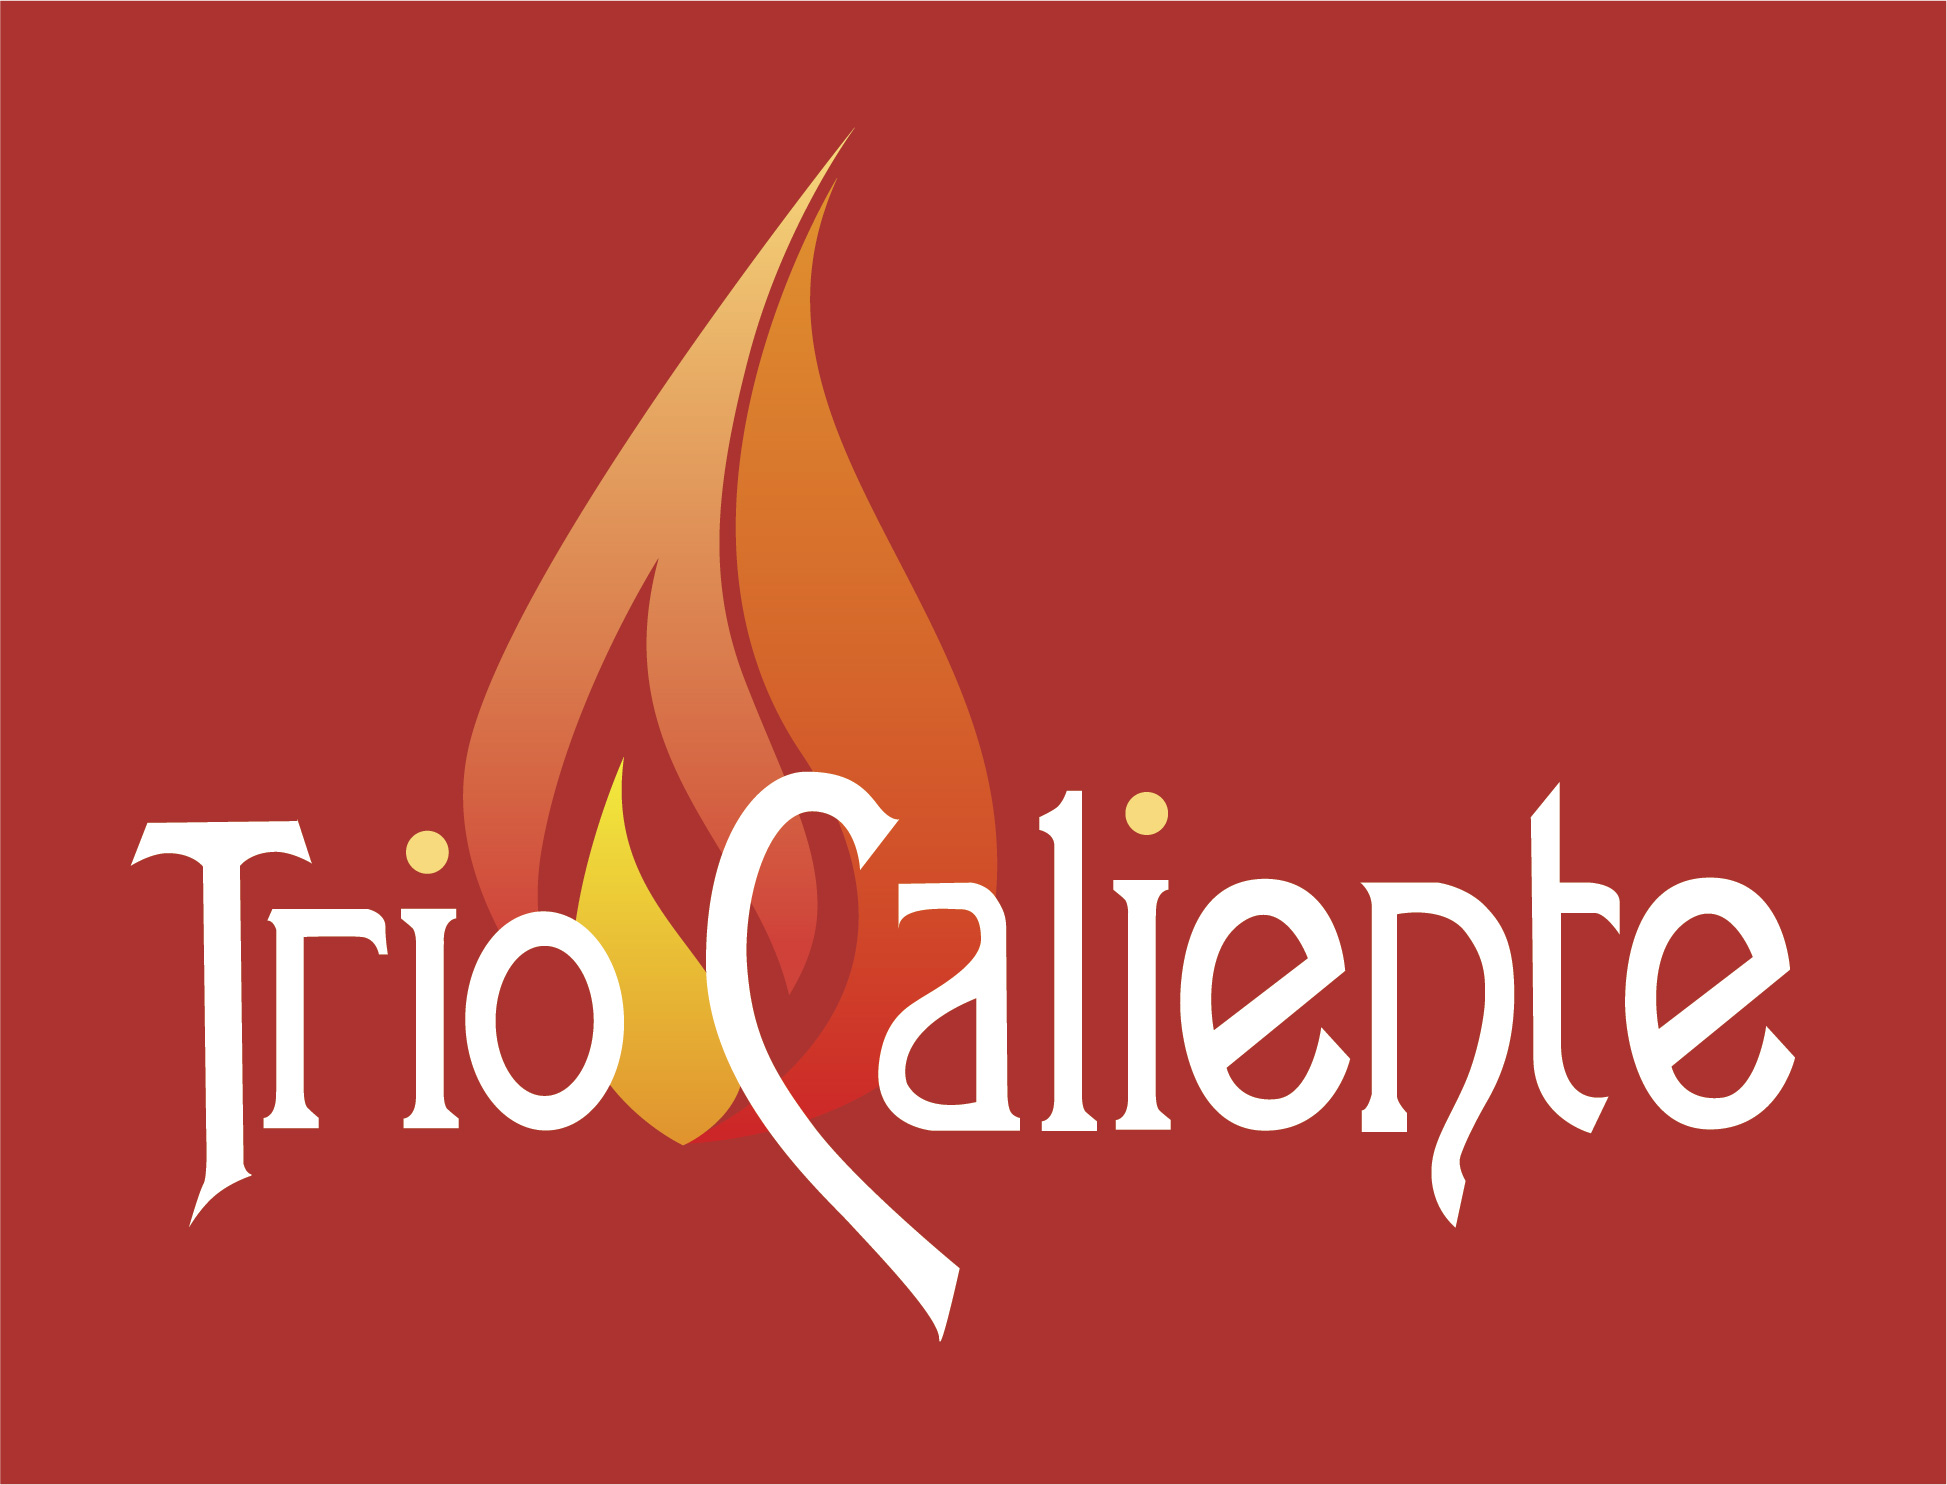 Trio Caliente Logo